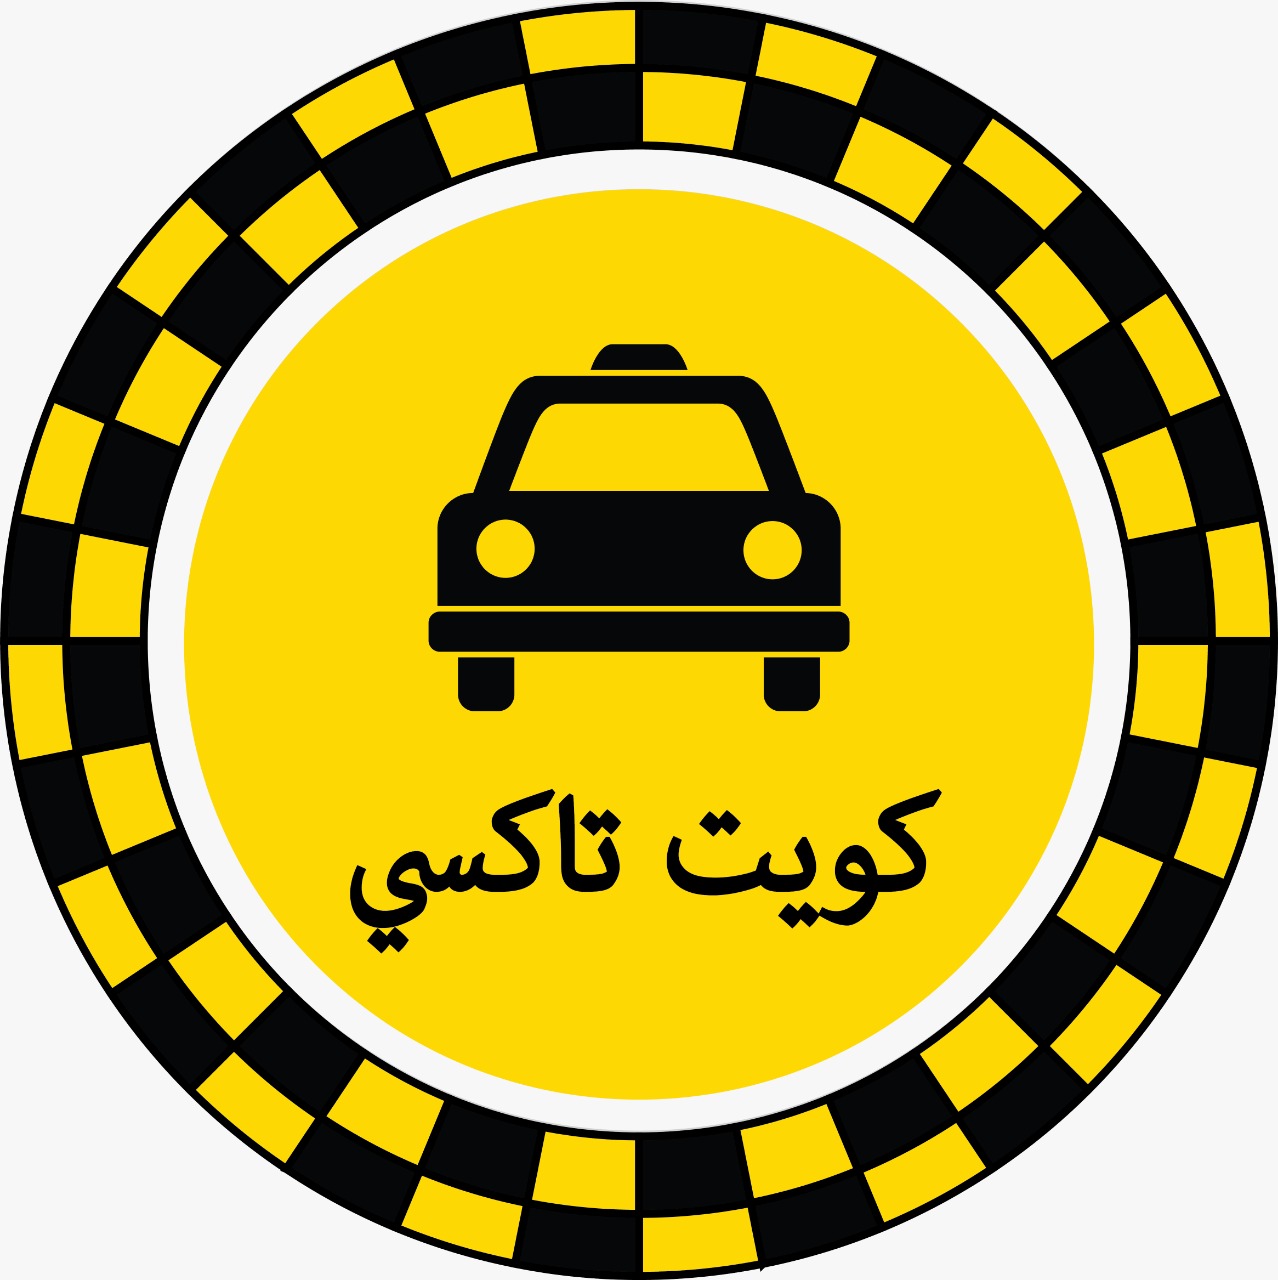 رقم تاكسي فيالسلام / تاكسي الصداقة والسلام كويت